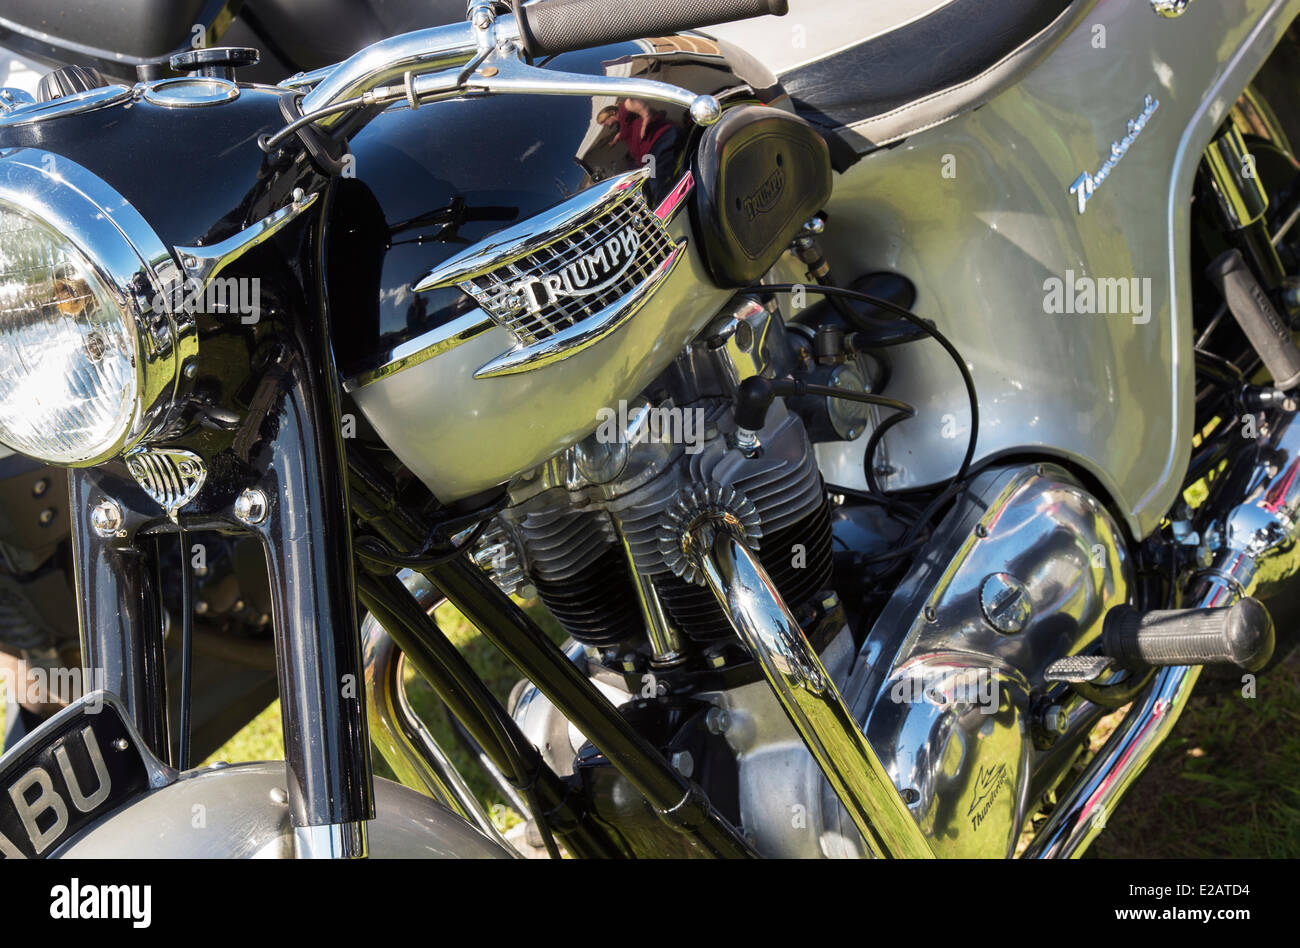 Moto Triumph Thunderbird. Moto classique britannique Banque D'Images